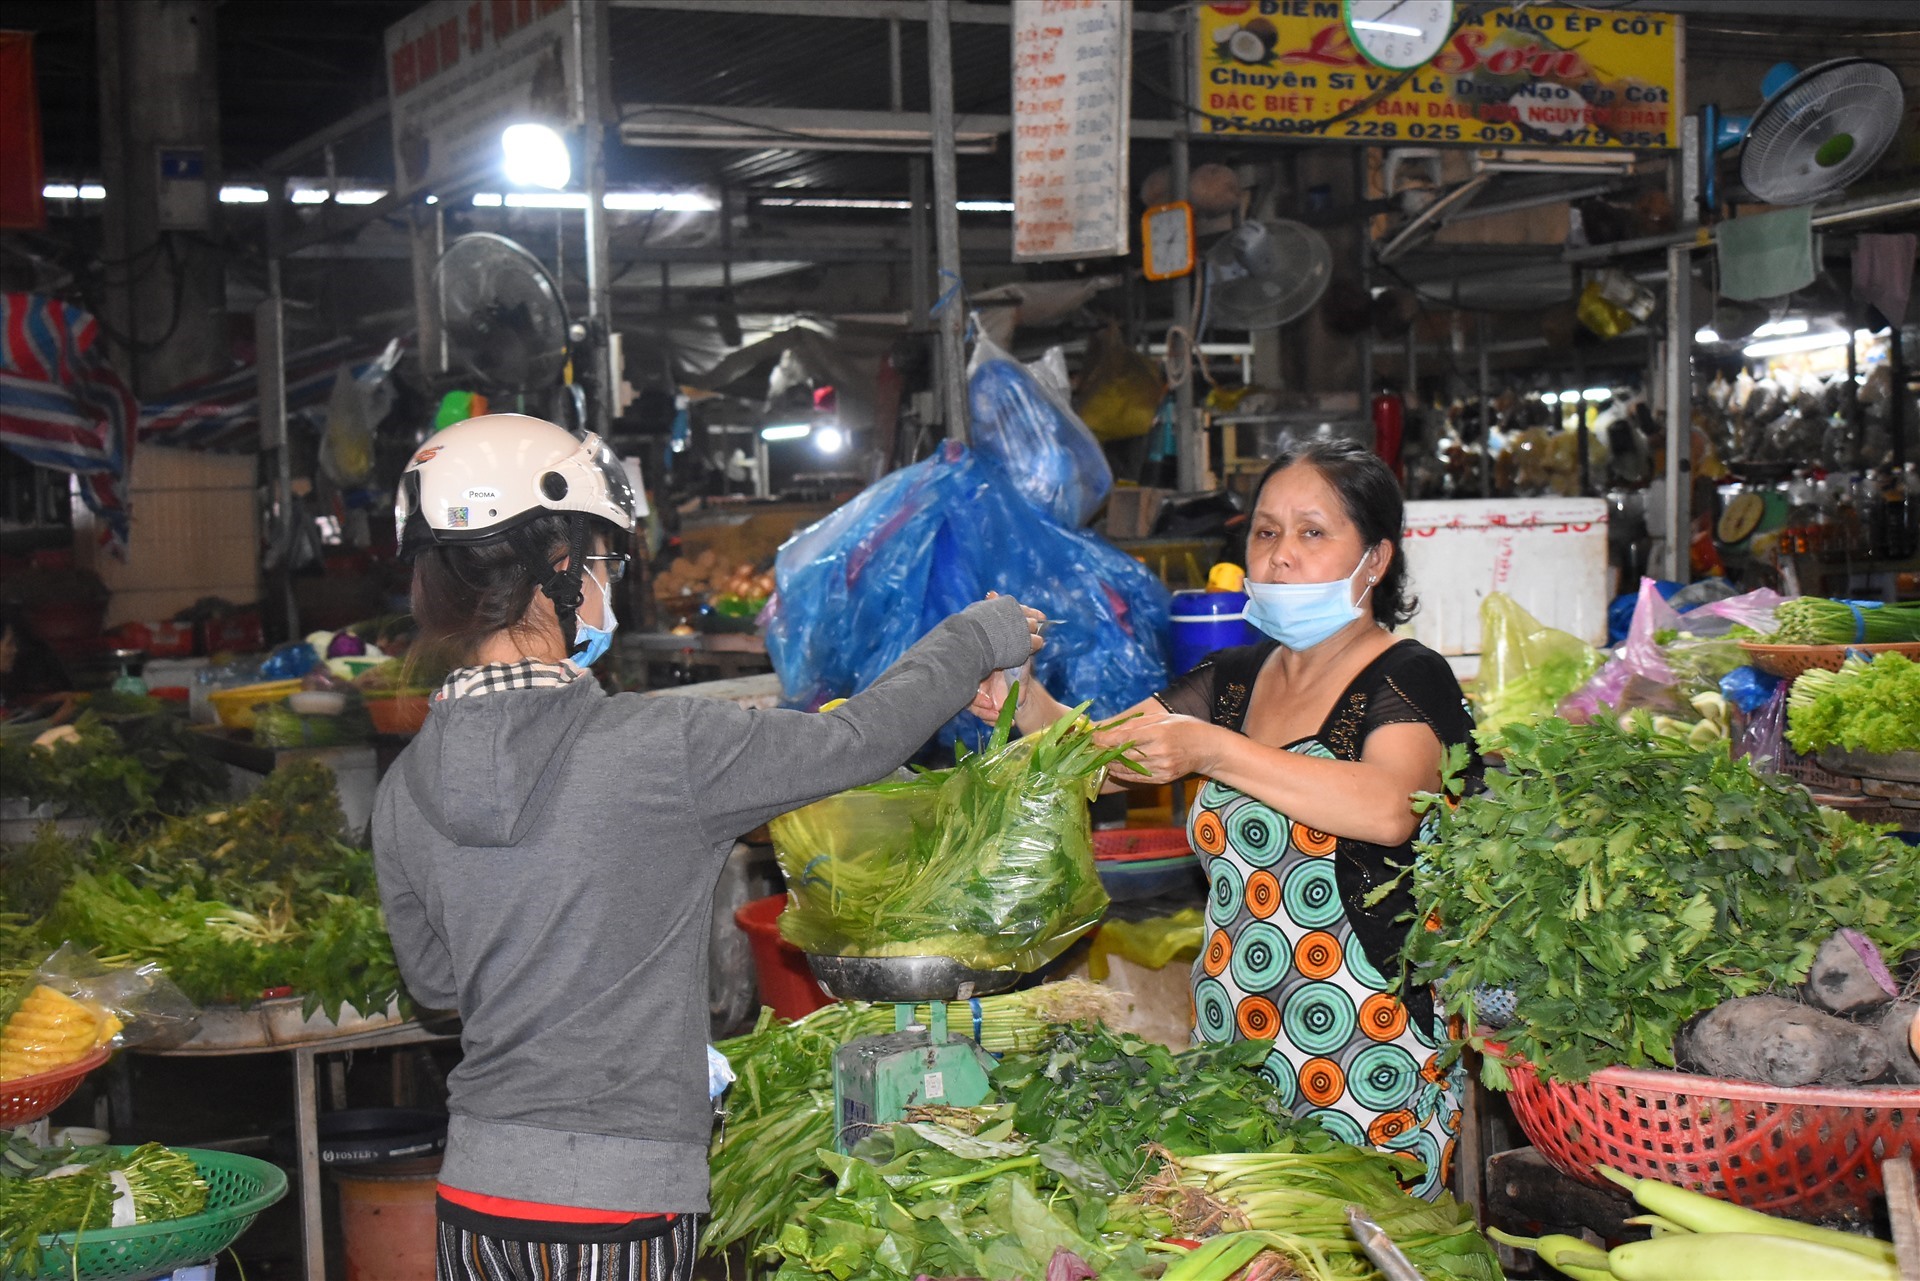 Anh Vũ Thành Được (TP. HCM) cho rằng, chợ truyền thống thường không được sạch sẽ bằng các cửa hàng tiện lợi. Ảnh: Thành Nhân.